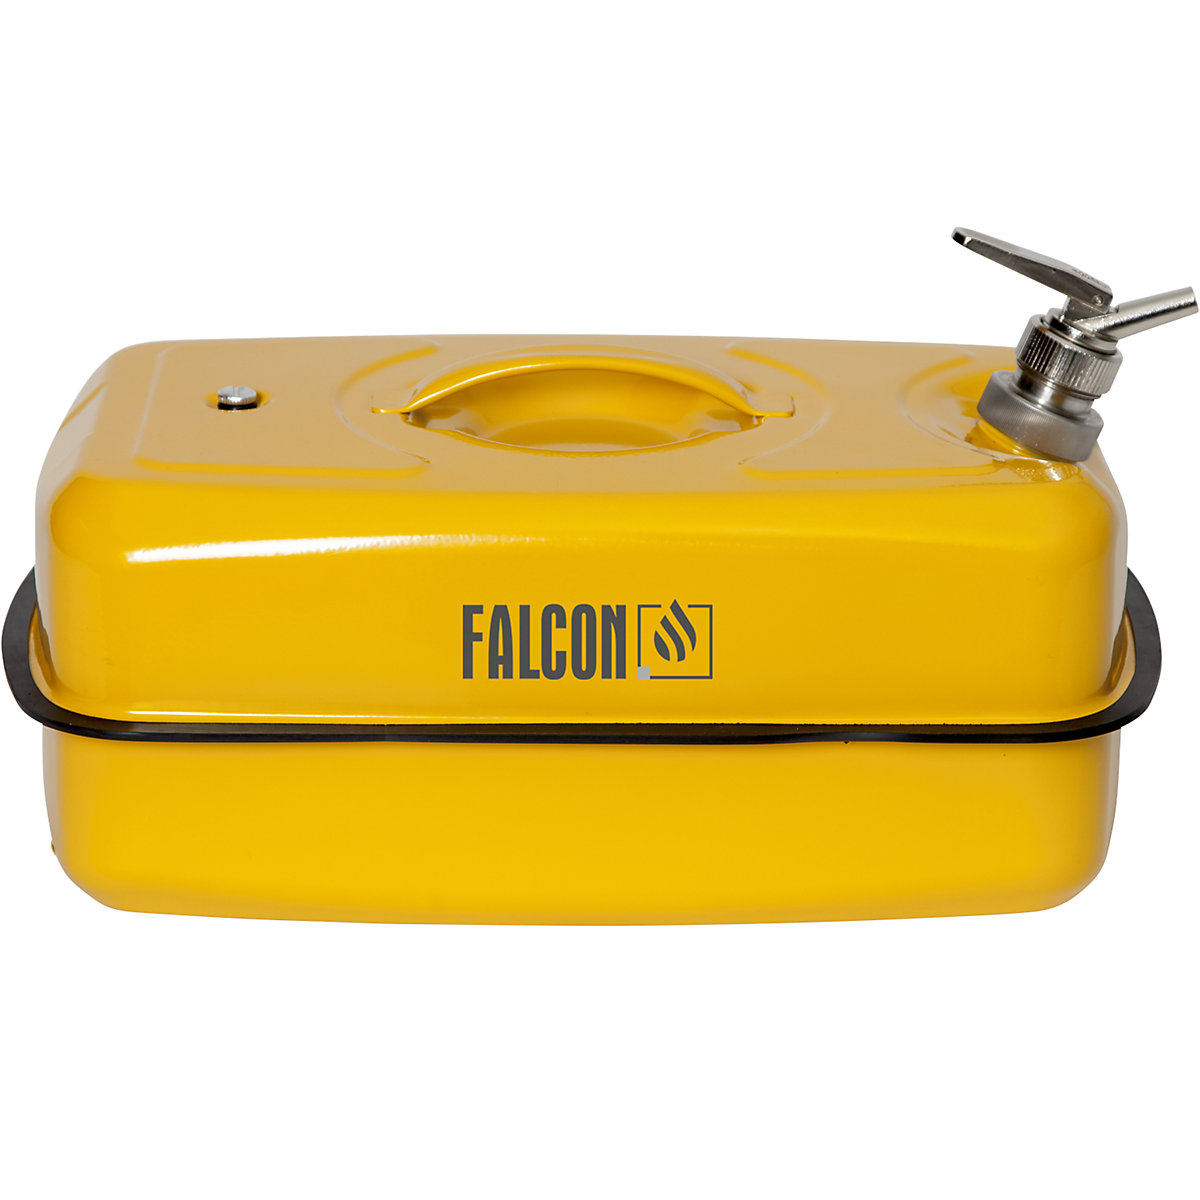 FALCON – Canistră de siguranță plată cu robinet pentru dozare fină (Imagine produs 9)